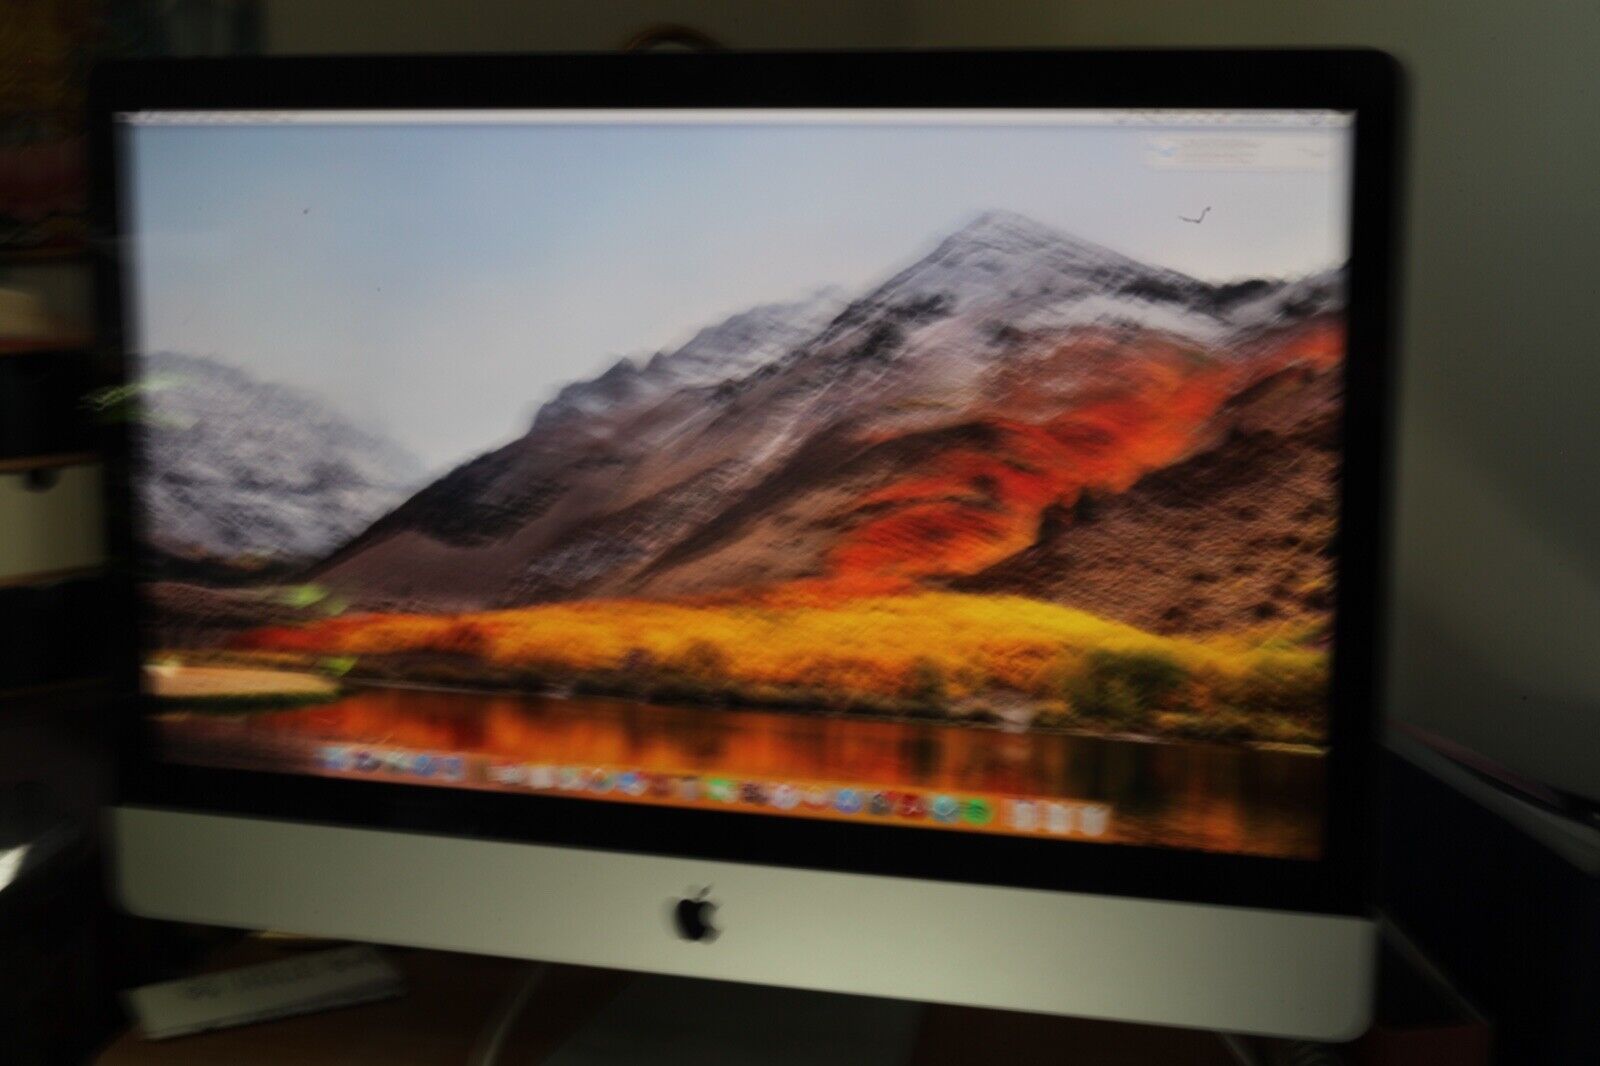 Apple iMac (27-Inch Late 2009) 2.8GHz Intel Core i7, 1TB HDD, 12GB Ram, OS 10.13